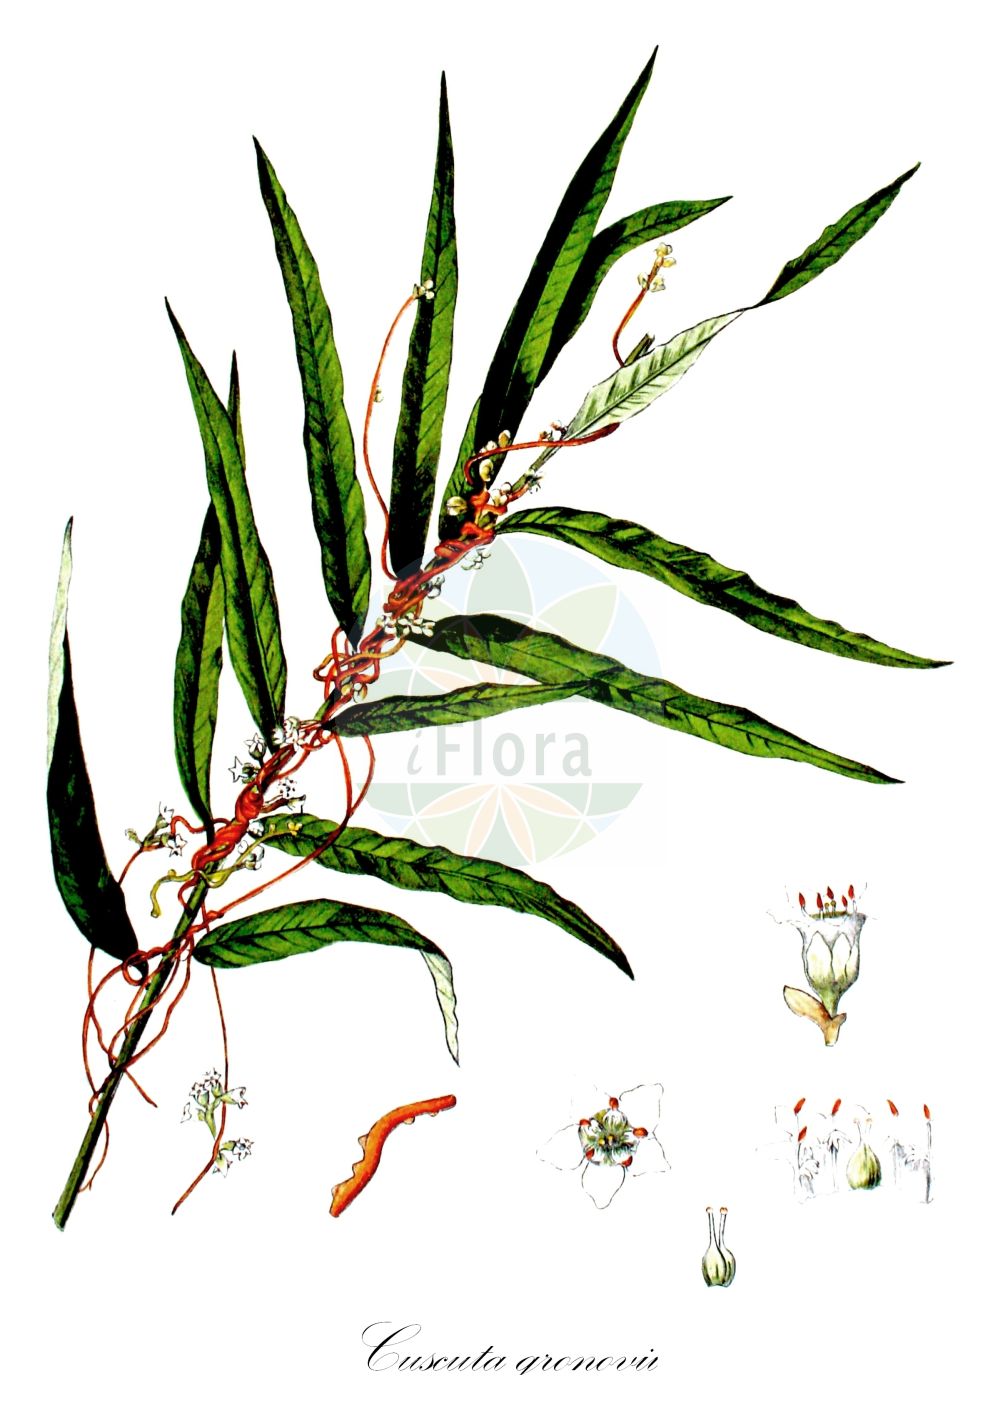 Historische Abbildung von Cuscuta gronovii (Gronovius Seide - Scaldweed). Das Bild zeigt Blatt, Bluete, Frucht und Same. ---- Historical Drawing of Cuscuta gronovii (Gronovius Seide - Scaldweed). The image is showing leaf, flower, fruit and seed.(Cuscuta gronovii,Gronovius Seide,Scaldweed,Cuscuta gronovii,Grammica gronovii,Gronovius Seide,Gronovius-Seide,Warzige Seide,Scaldweed,Gronovius Dodder,Swamp Dodder,Cuscuta,Seide,Dodder,Convolvulaceae,Windengewächse,Bindweed family,Blatt,Bluete,Frucht,Same,leaf,flower,fruit,seed,Kops (1800-1934))